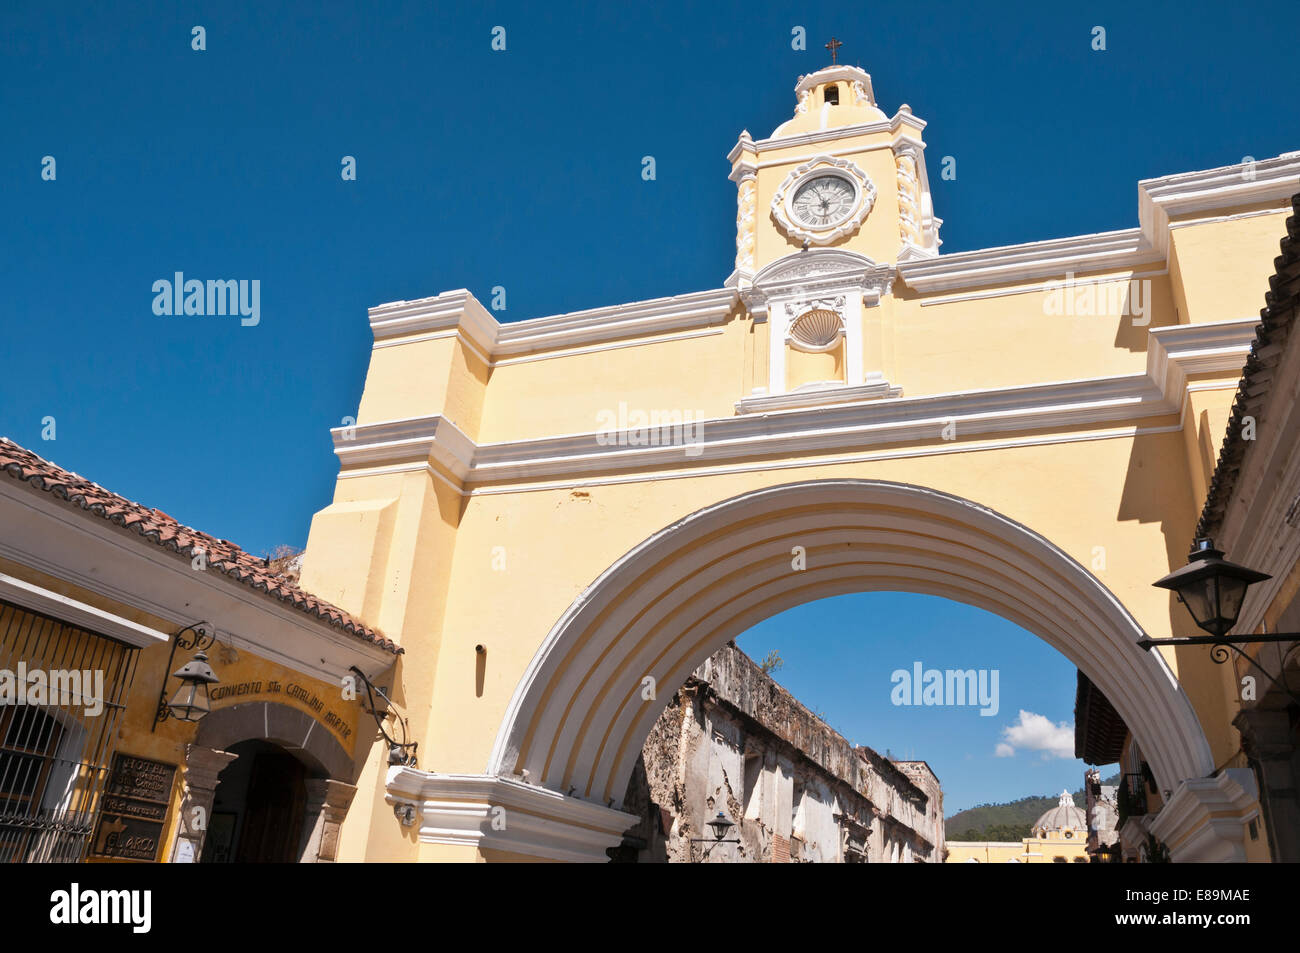 Santa Catalina Arch, Arco de Santa Catalina, Antigua, Guatemala Stock Photo